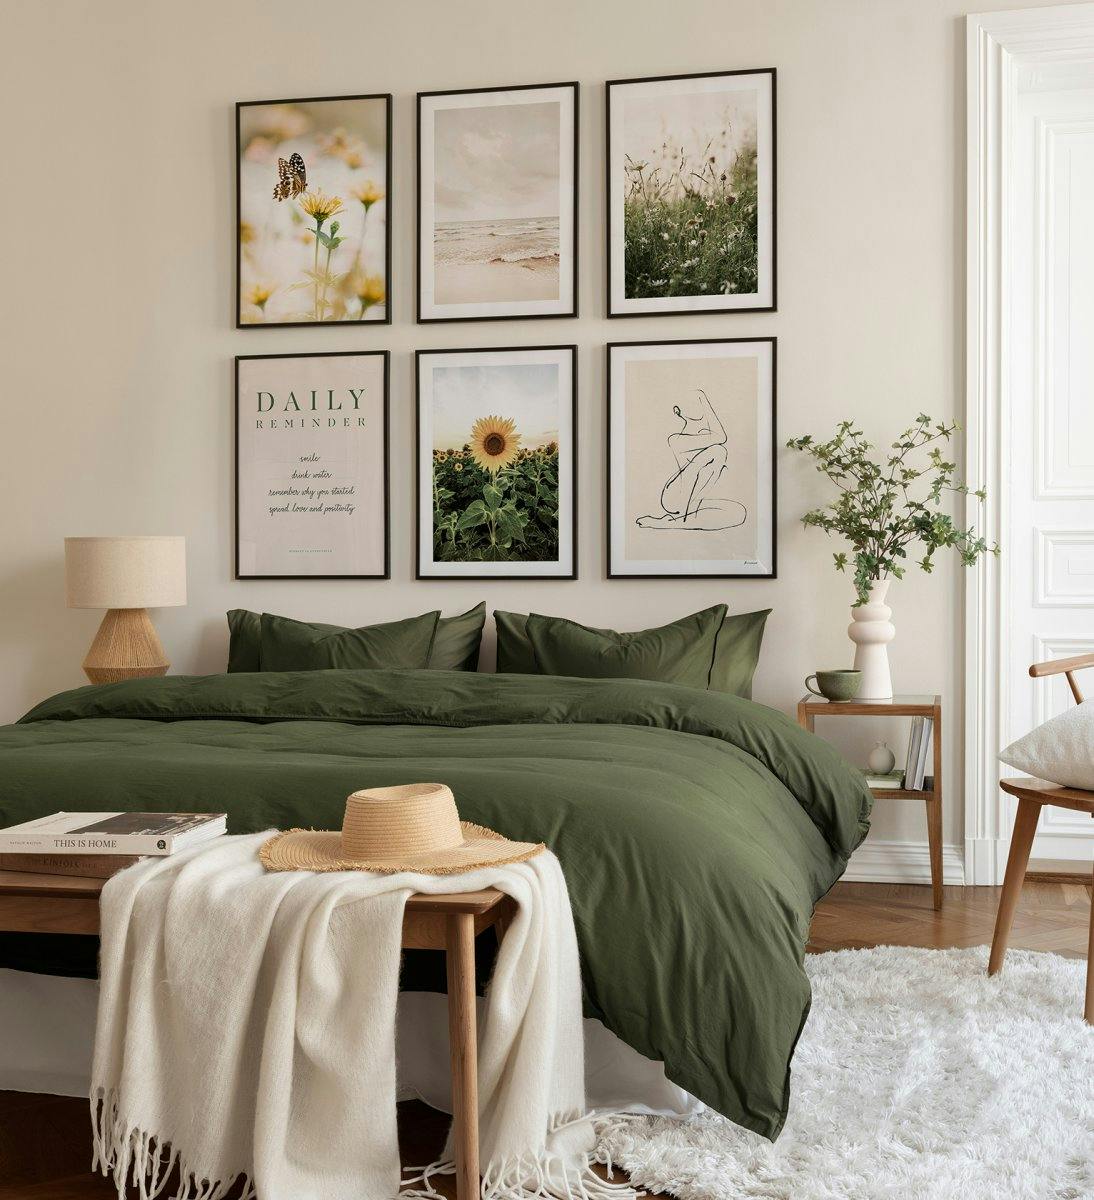 Una bellissima galleria a parete con motivi naturali in verde, ideale per la camera da letto con cornici in legno nero.